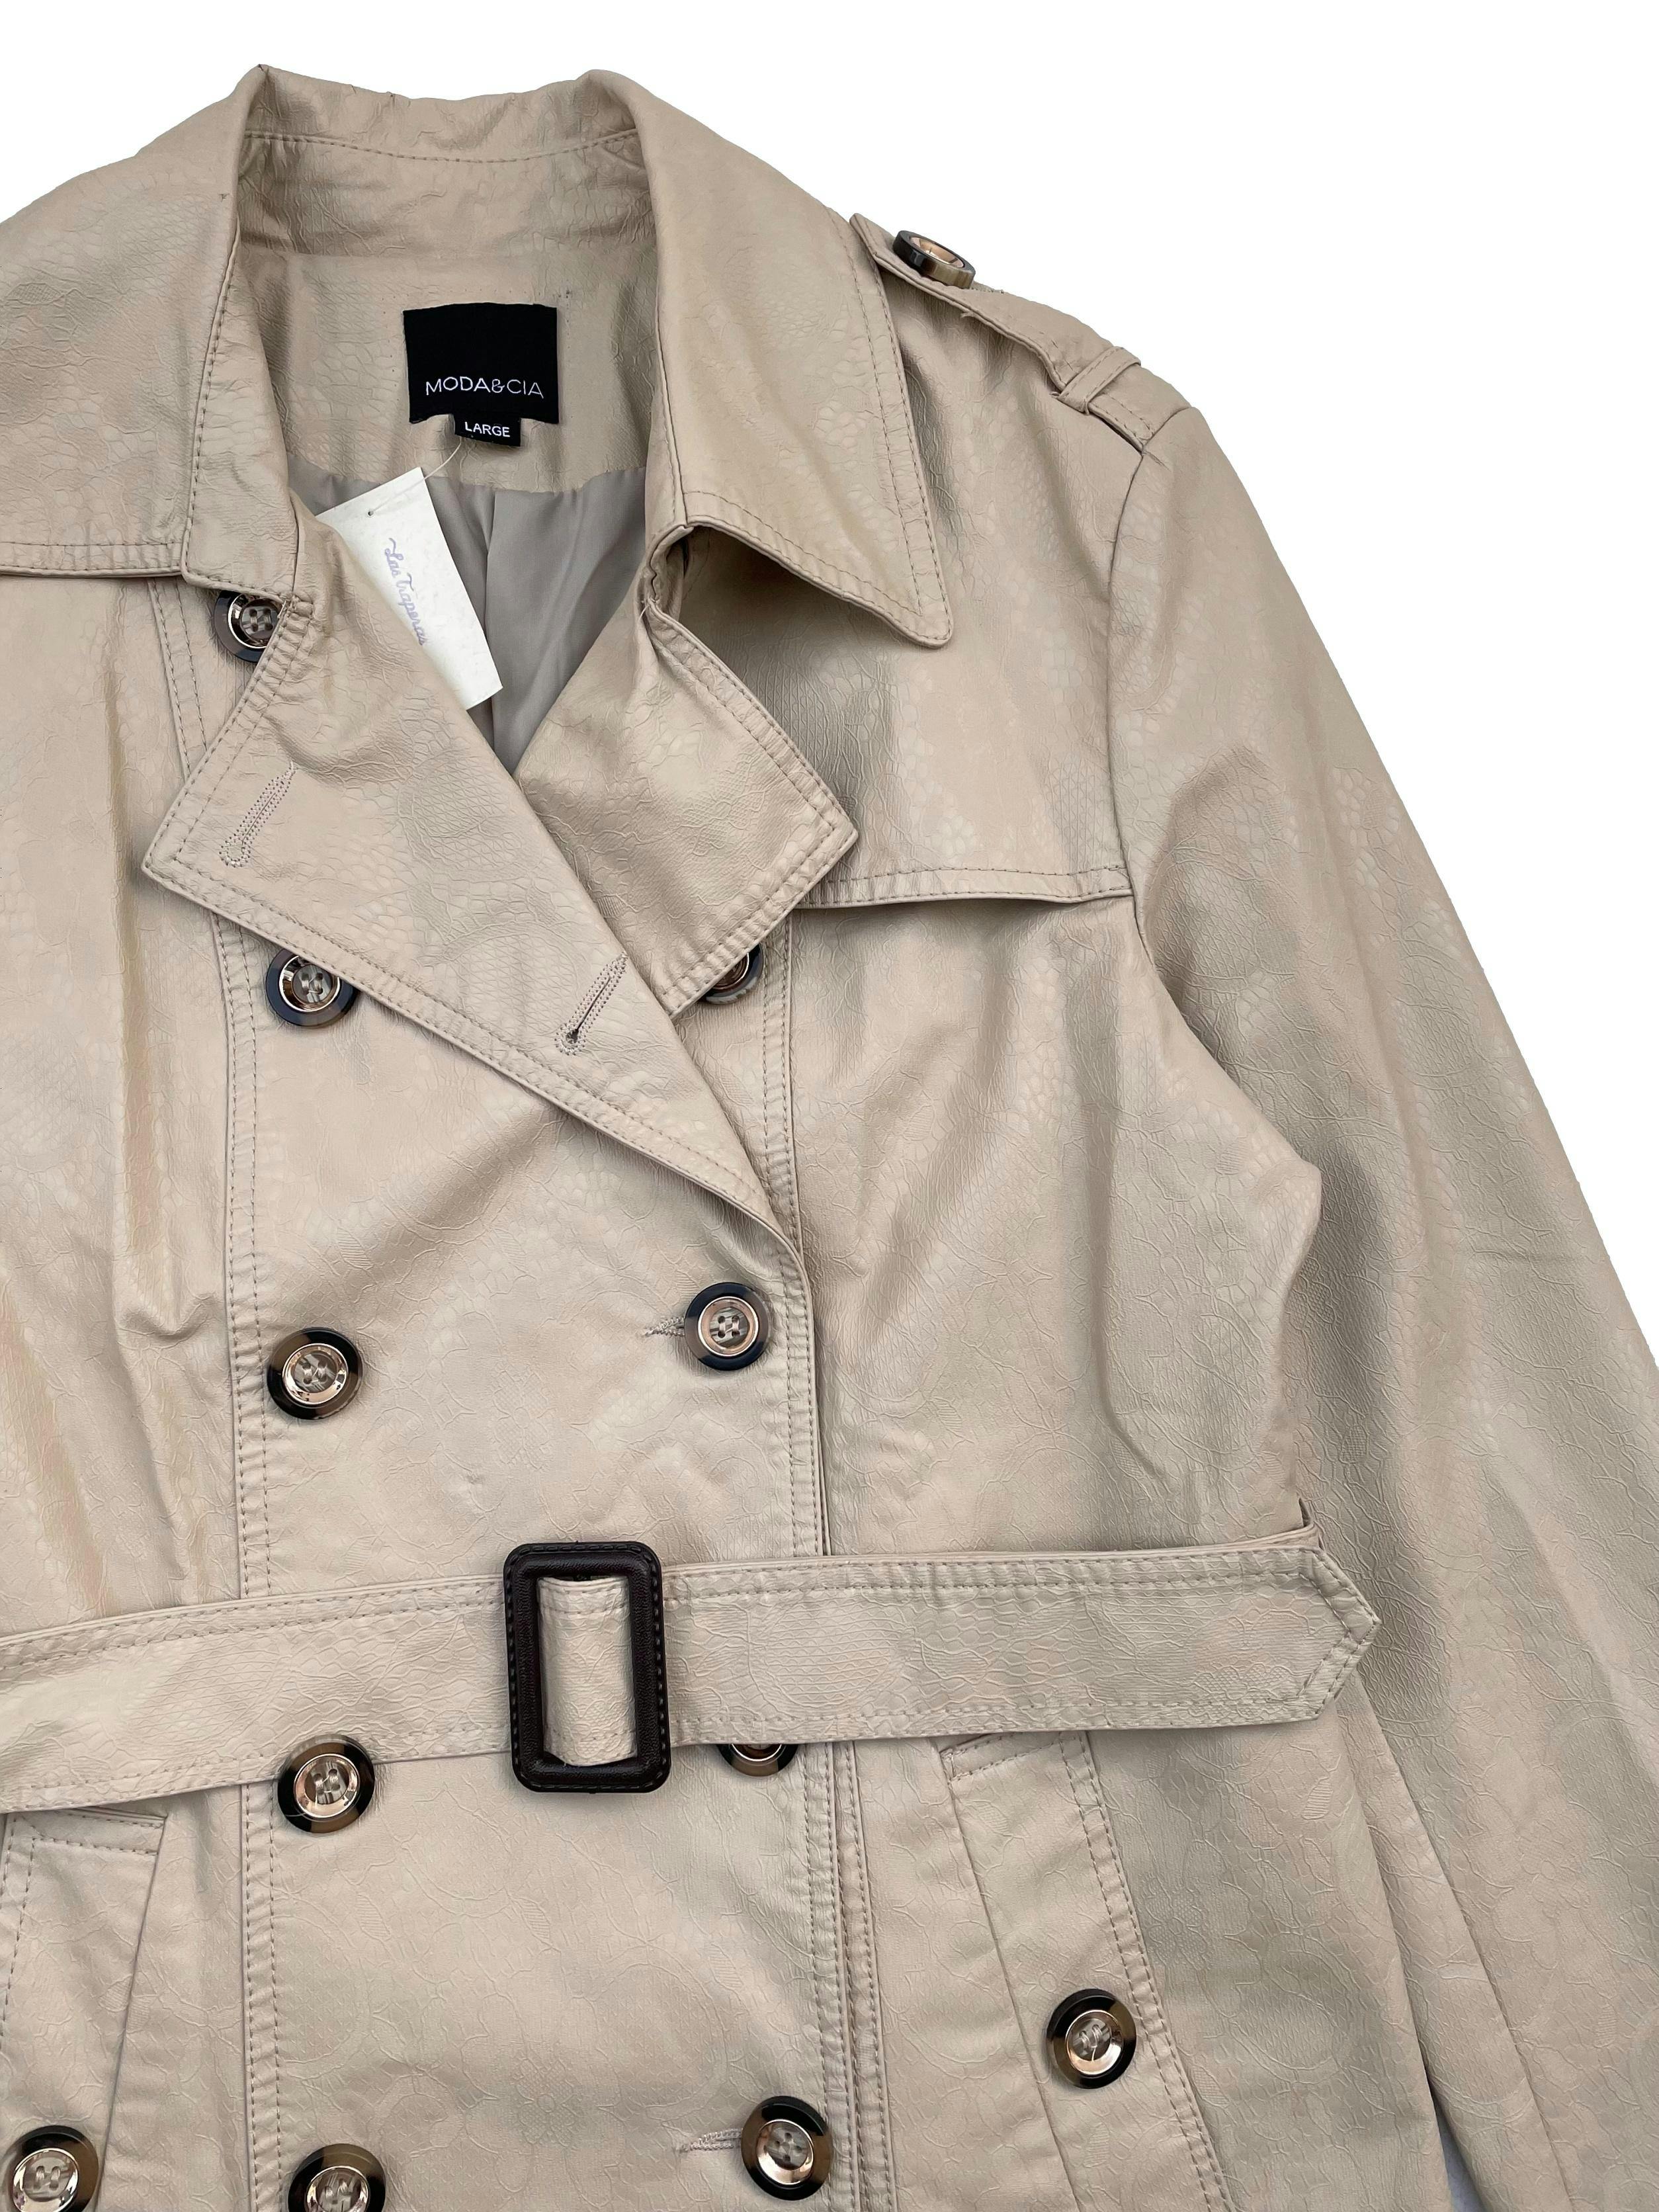 Trench Coat Moda&Cia de cuerina beige texturizada, forrada, dos bolsillos, cinturón y botón de repuesto. Busto 104cm Largo 66cm. Precio original S/450